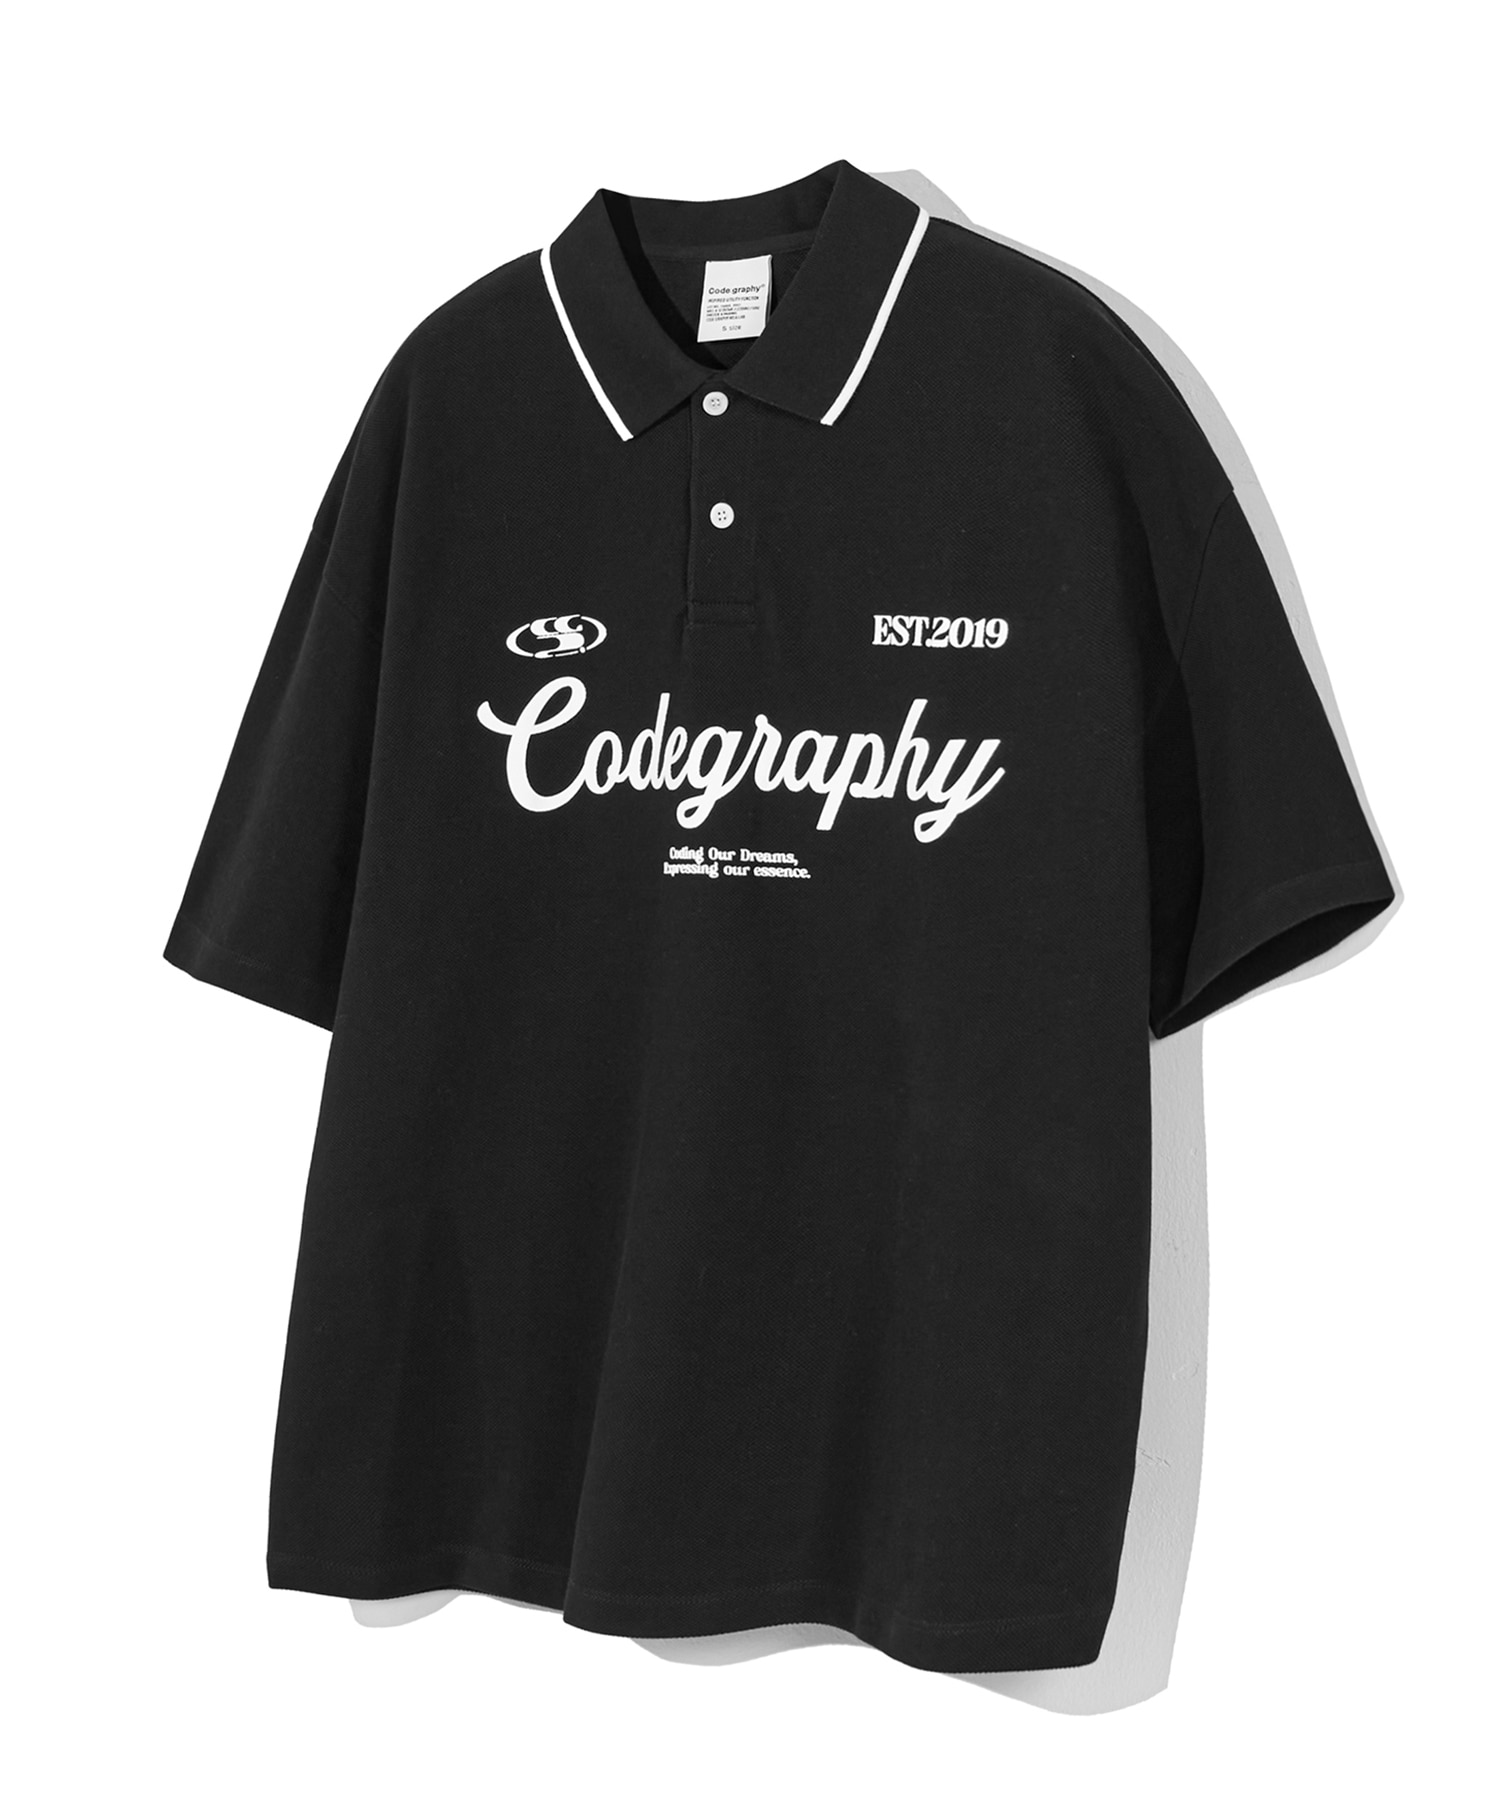 C.GRAPHY 카라 반소매 티셔츠_블랙